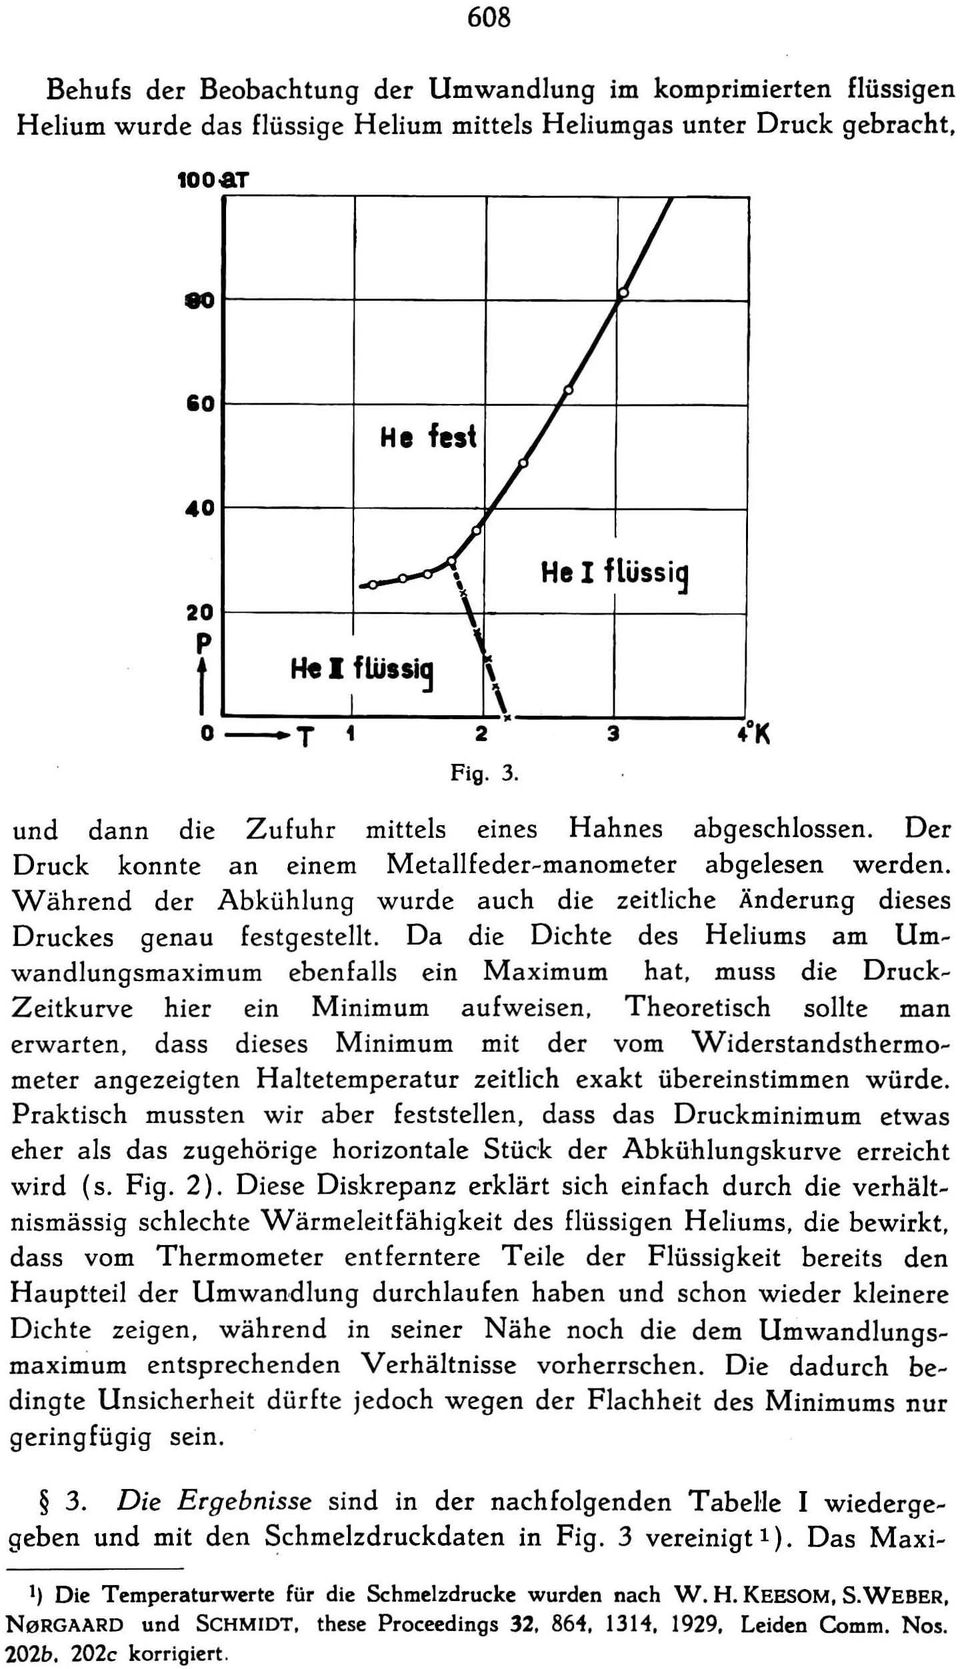 Während der Abkühlung wurde auch die zeitliche Änderung dies es Druckes genau festgestellt. Da die Dichte des Heliums am Umwandlungsmaximum ebenfalls ein Maximum hat.